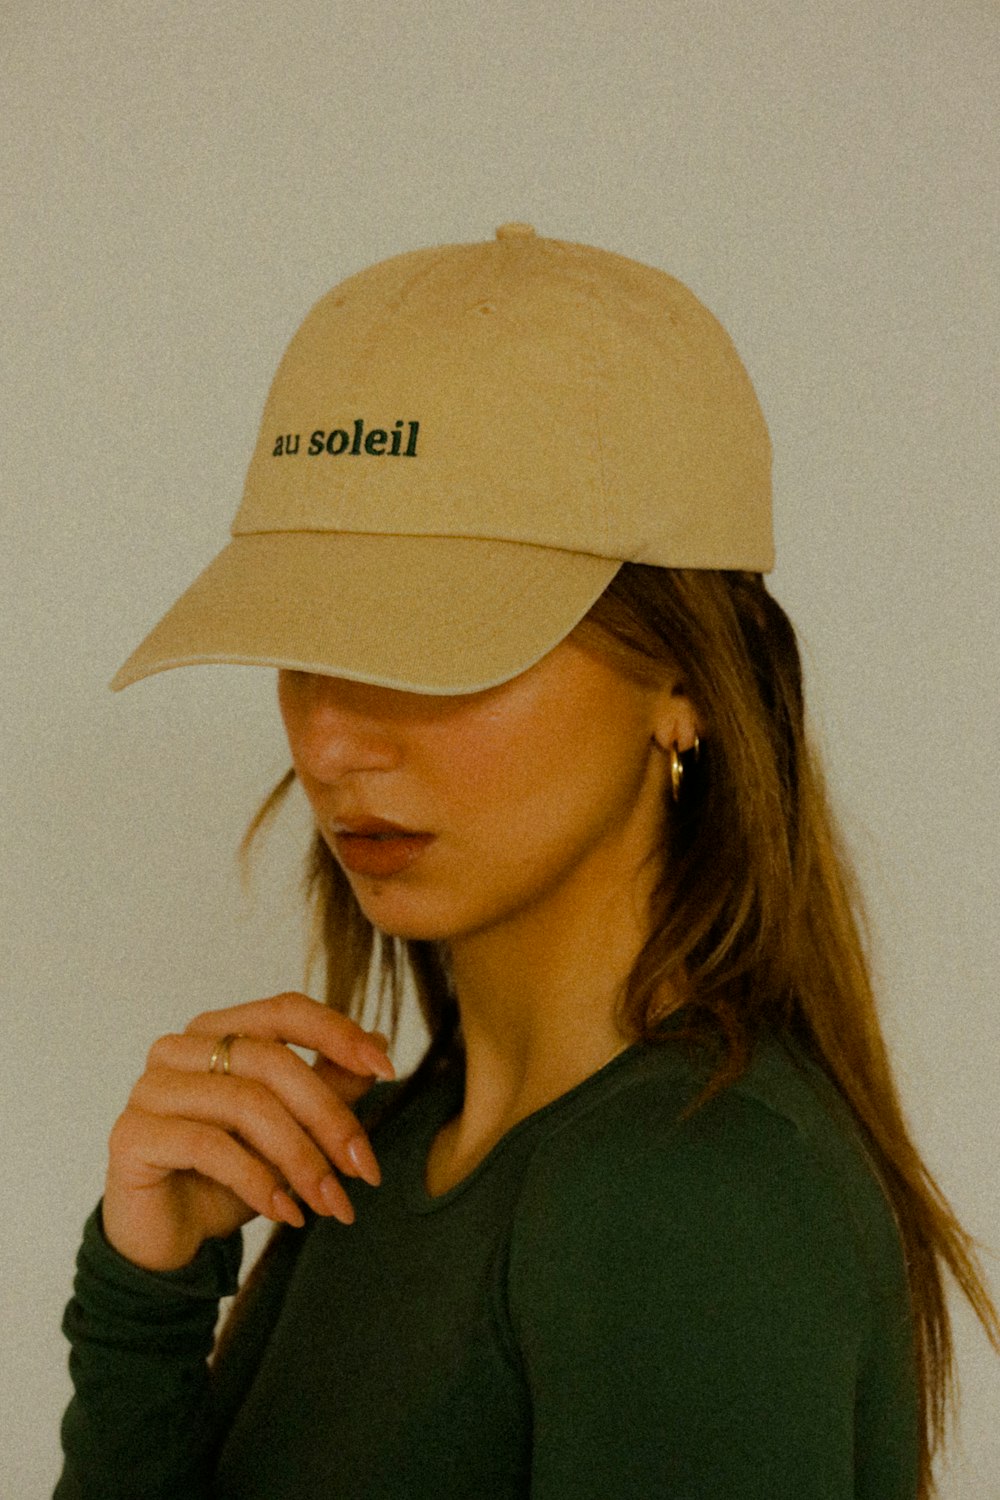 Une femme portant un chapeau avec le mot Solei dessus